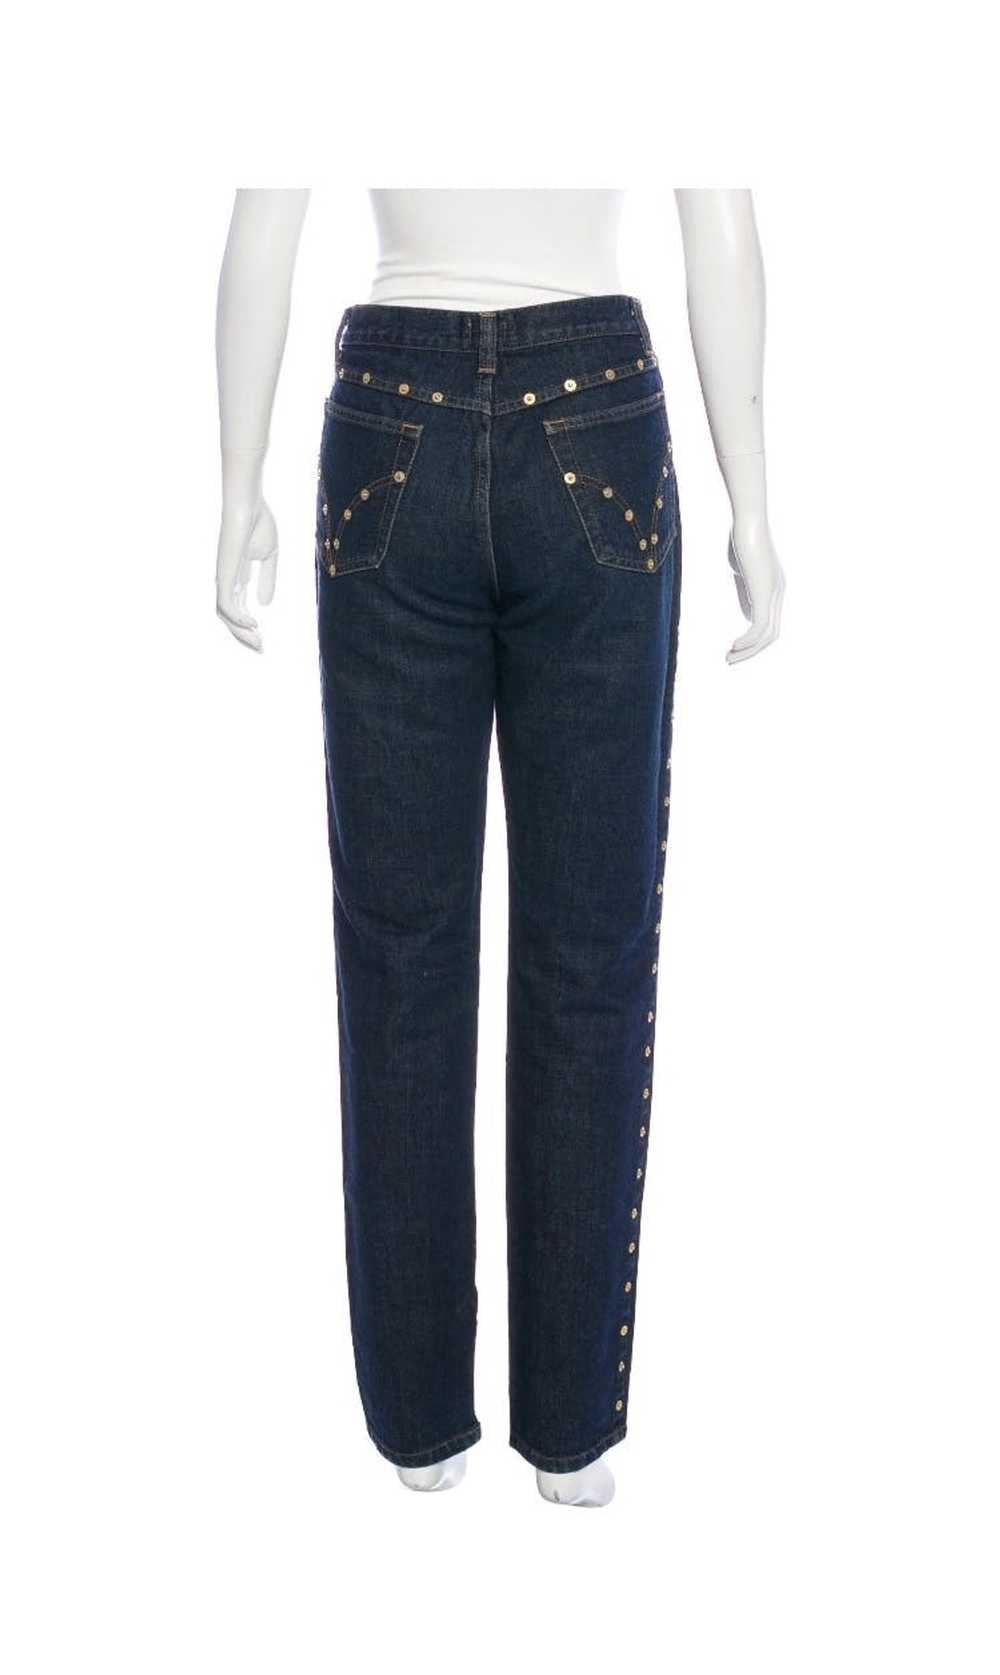 Dolce & Gabbana Dolce & Gabbana jeans - image 4